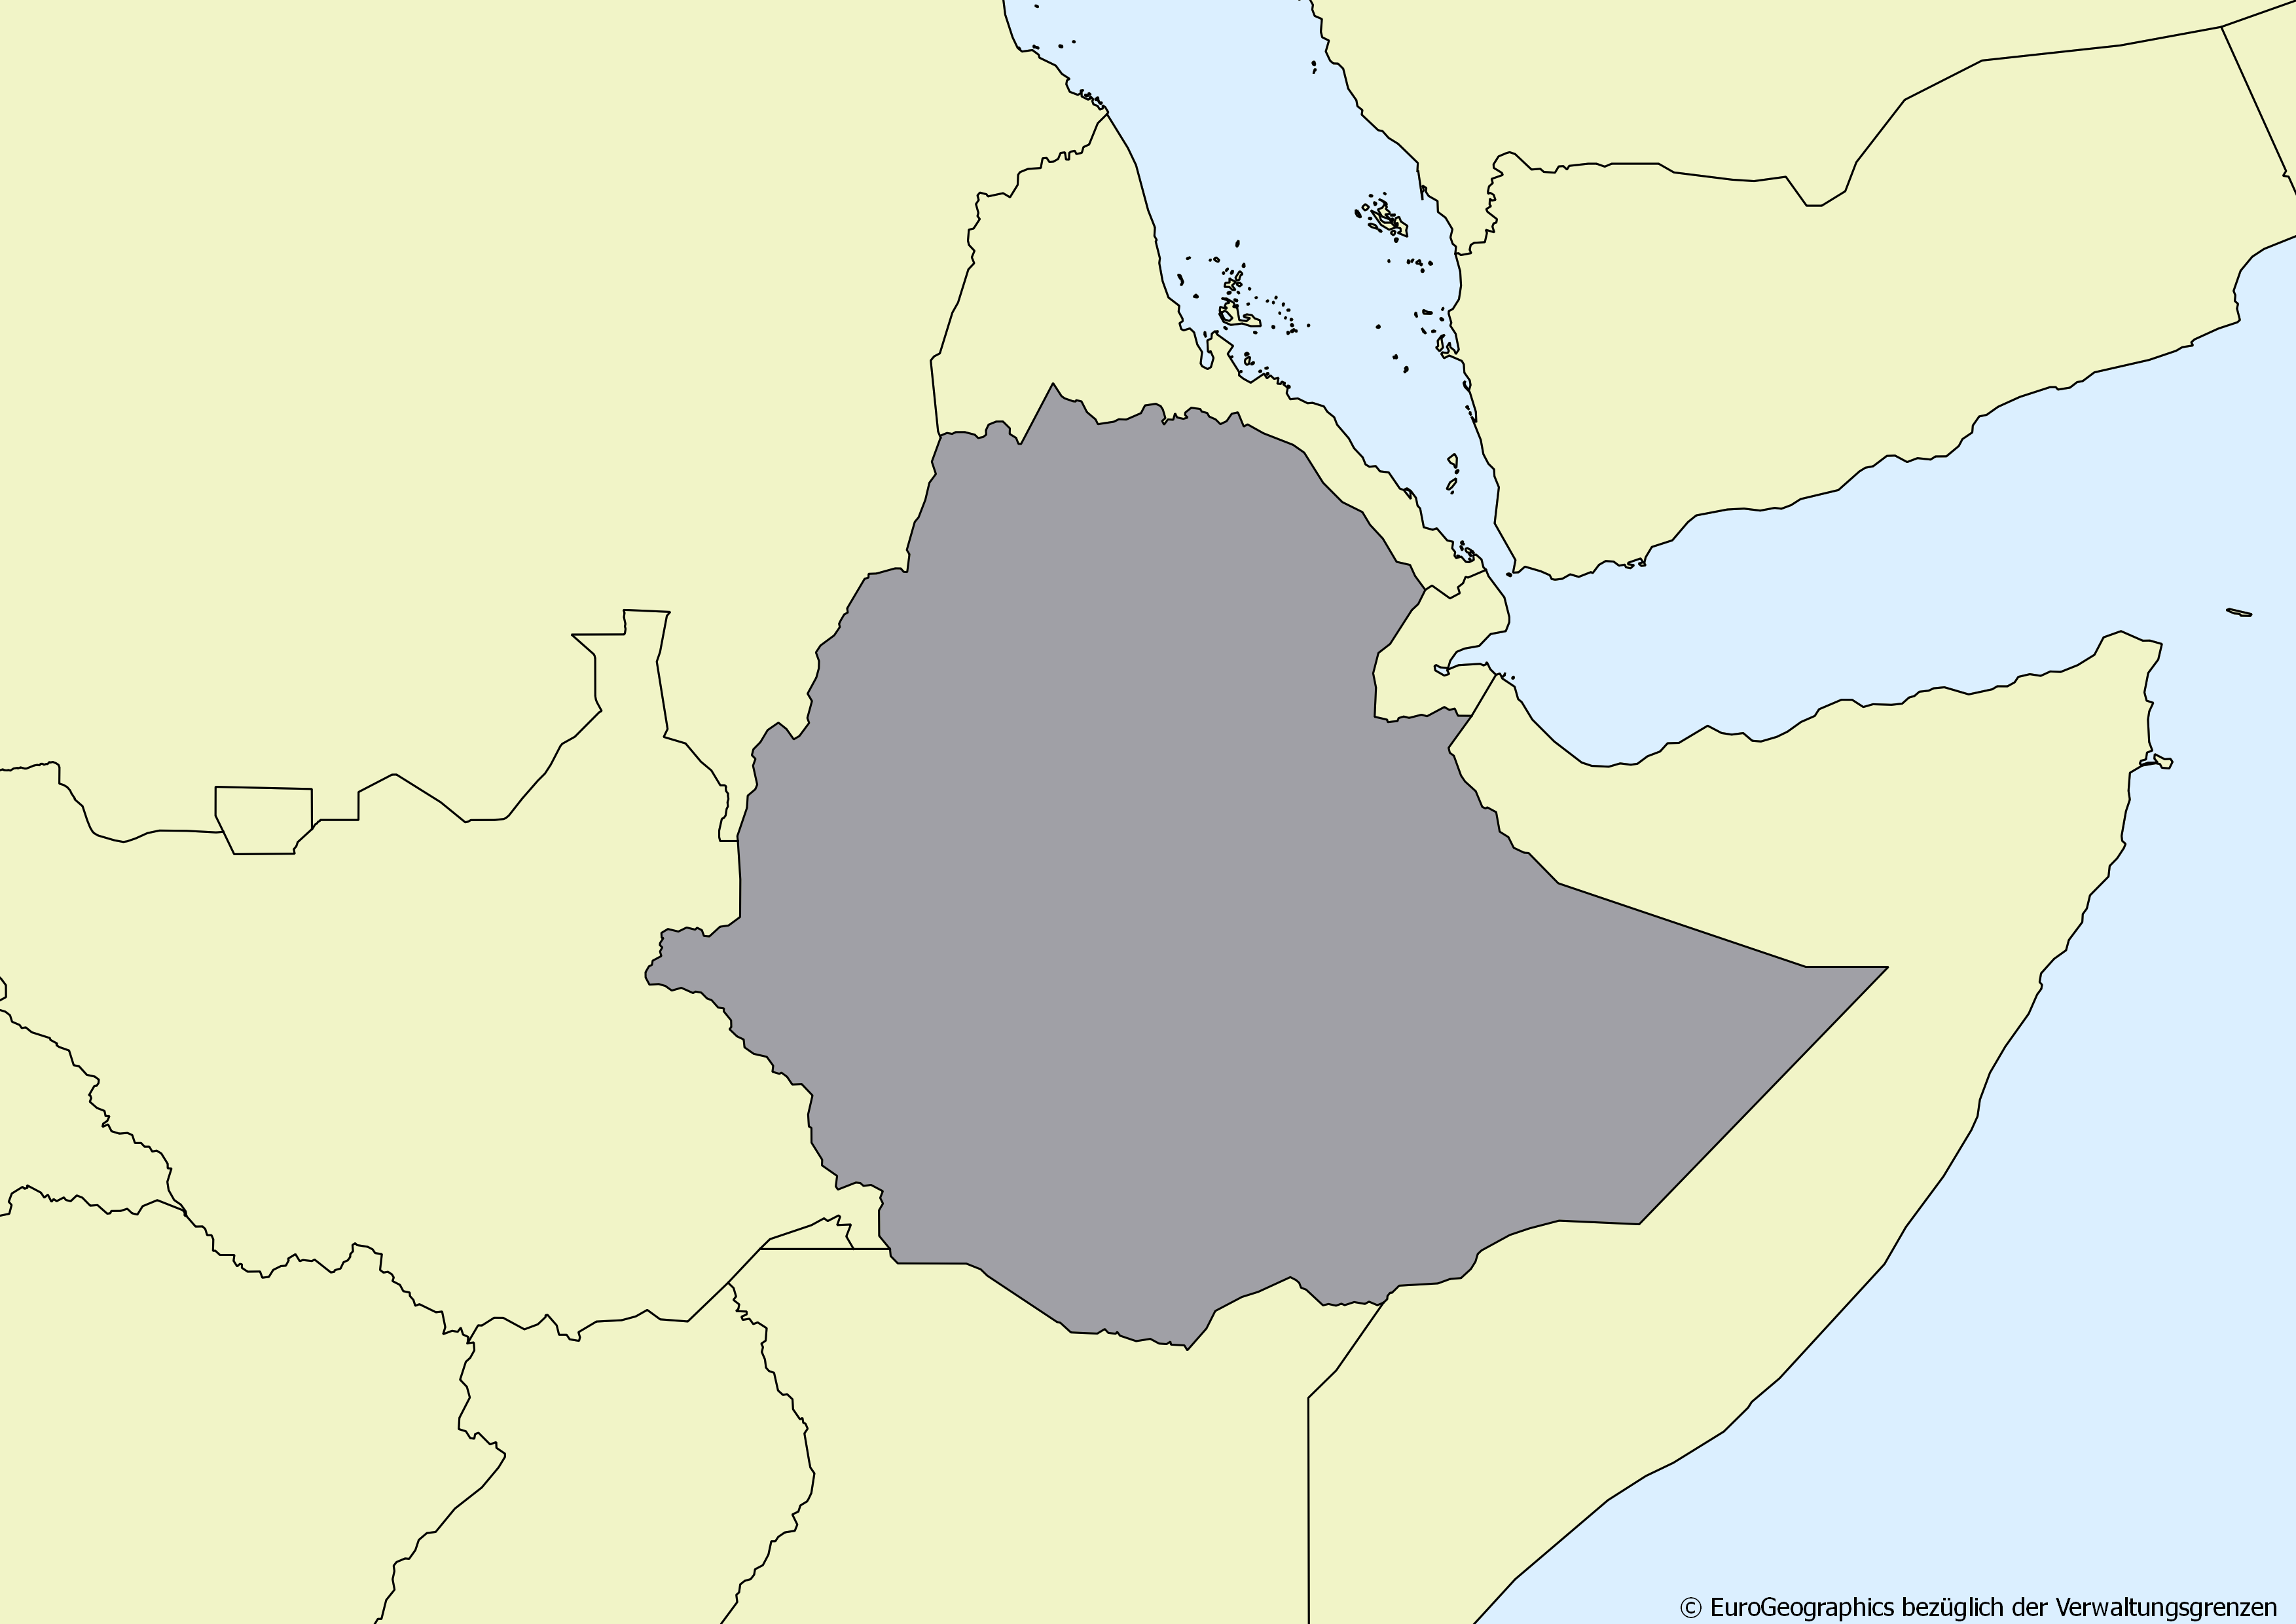 Ausschnitt einer Karte des afrikanischen Kontinents mit Ländergrenzen. Im Zentrum steht Äthiopien grau hervorgehoben